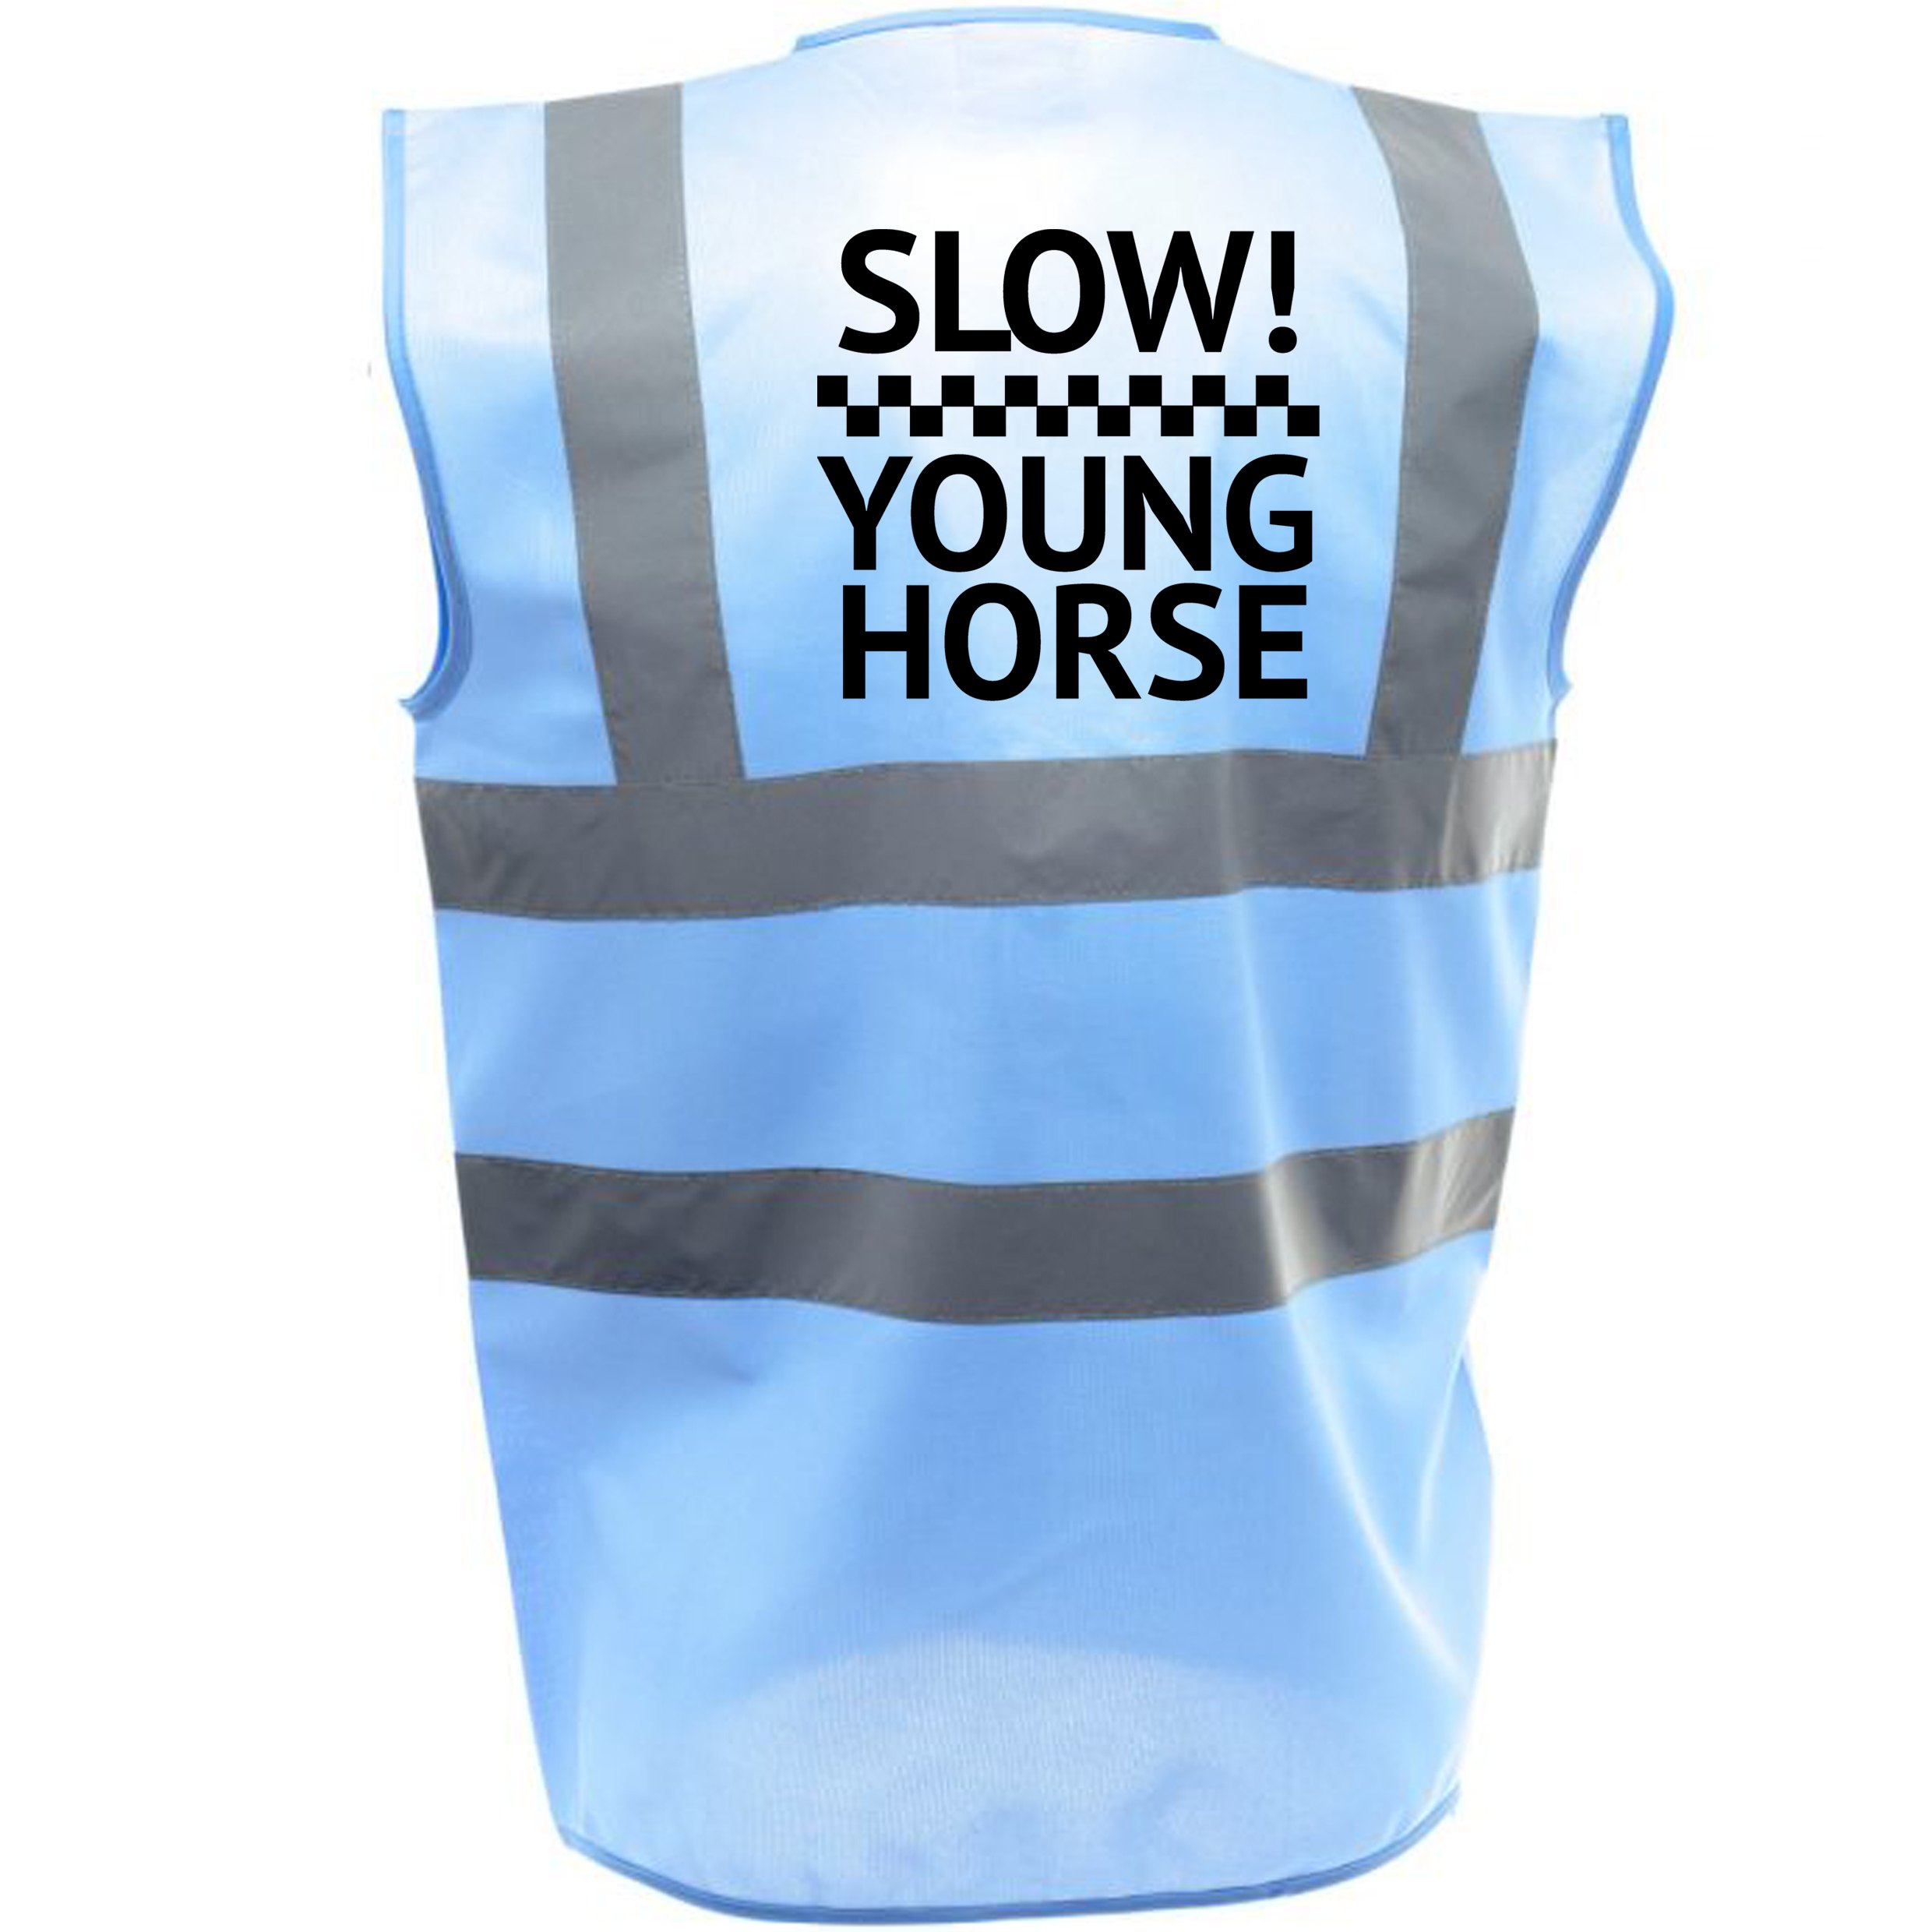 KIDS YOUNG HORSE EQUESTRIAN HI VIZ VIS VEST EQUINE REFLECTIVE SAFETY RIDING 